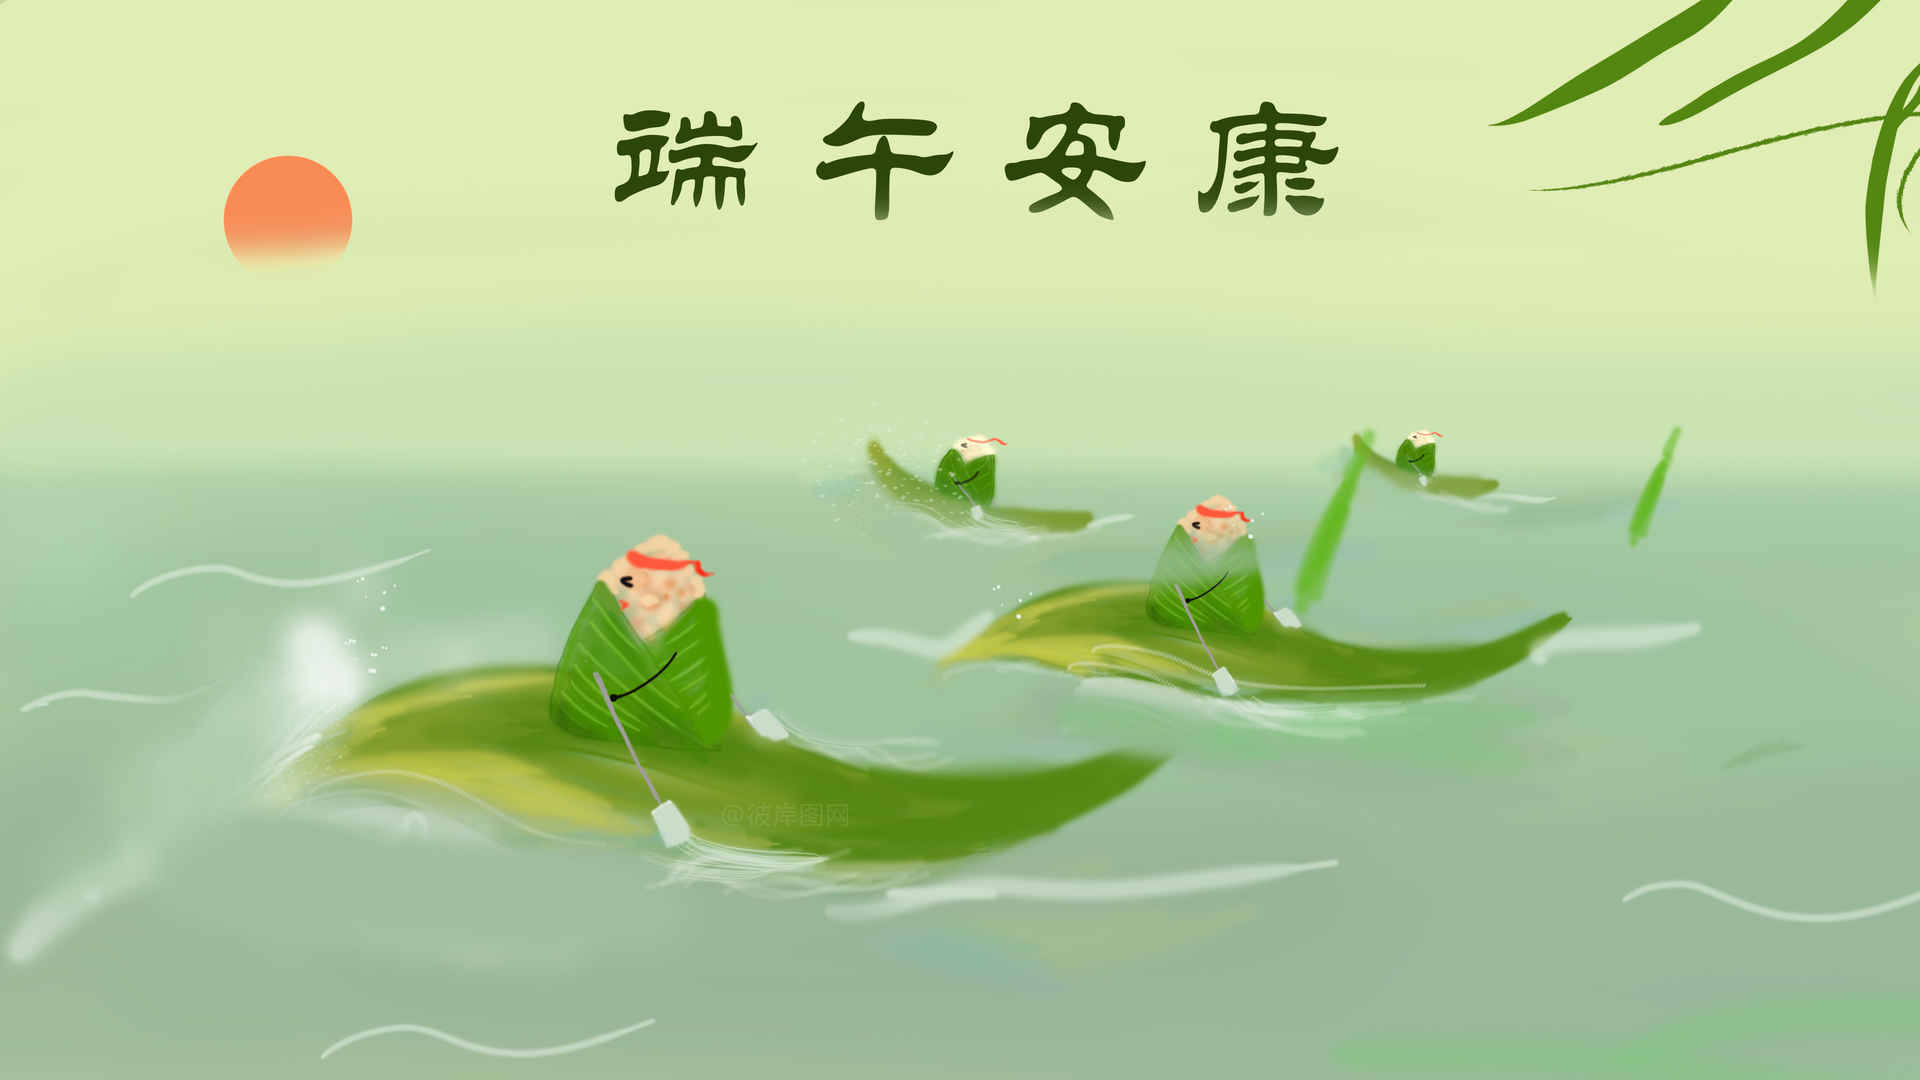 粽子创意 叶子 划龙舟 端午节 端午安康 4k壁纸